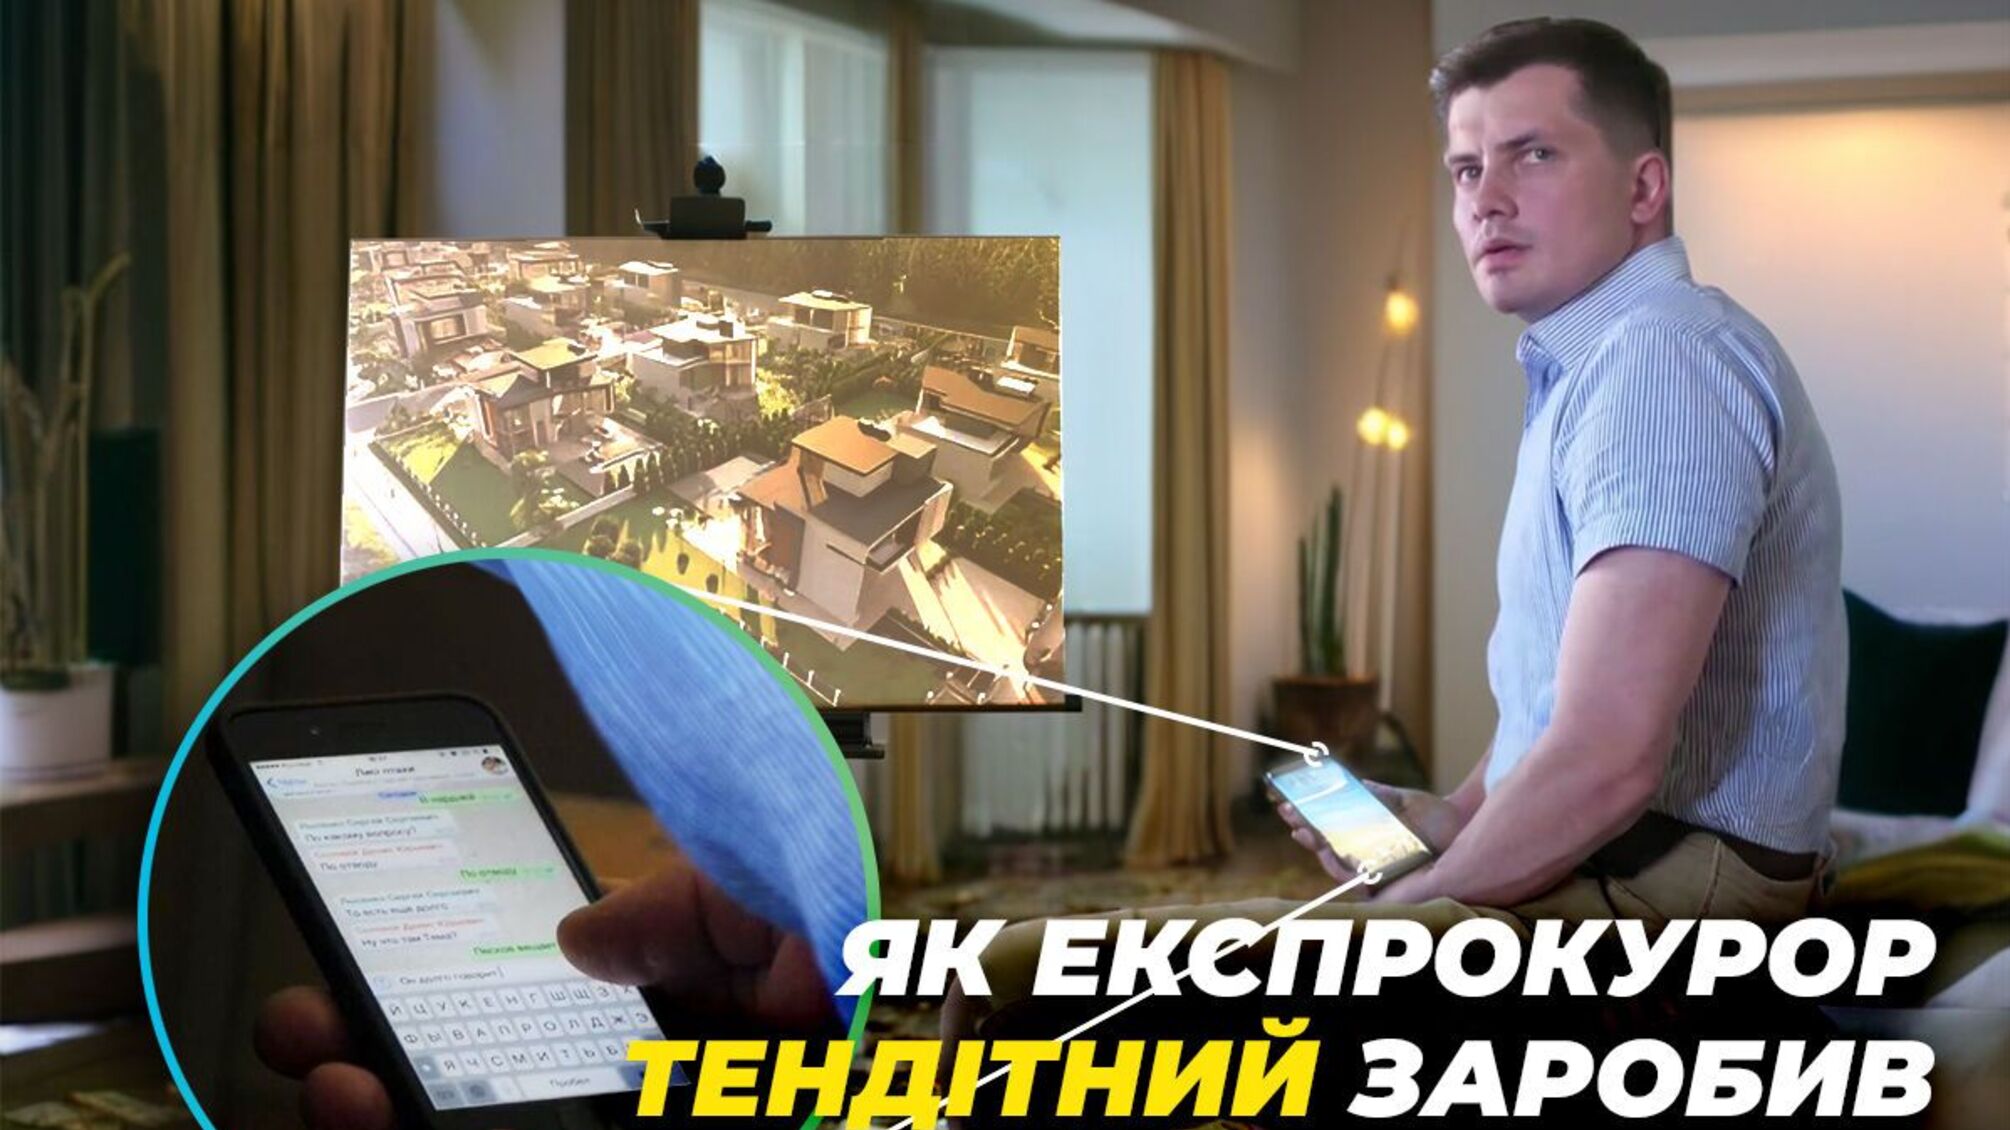 SMS-договорняки и элитные коттеджи под Киевом: как экспрокурор Хрупкий заработал миллионное состояние